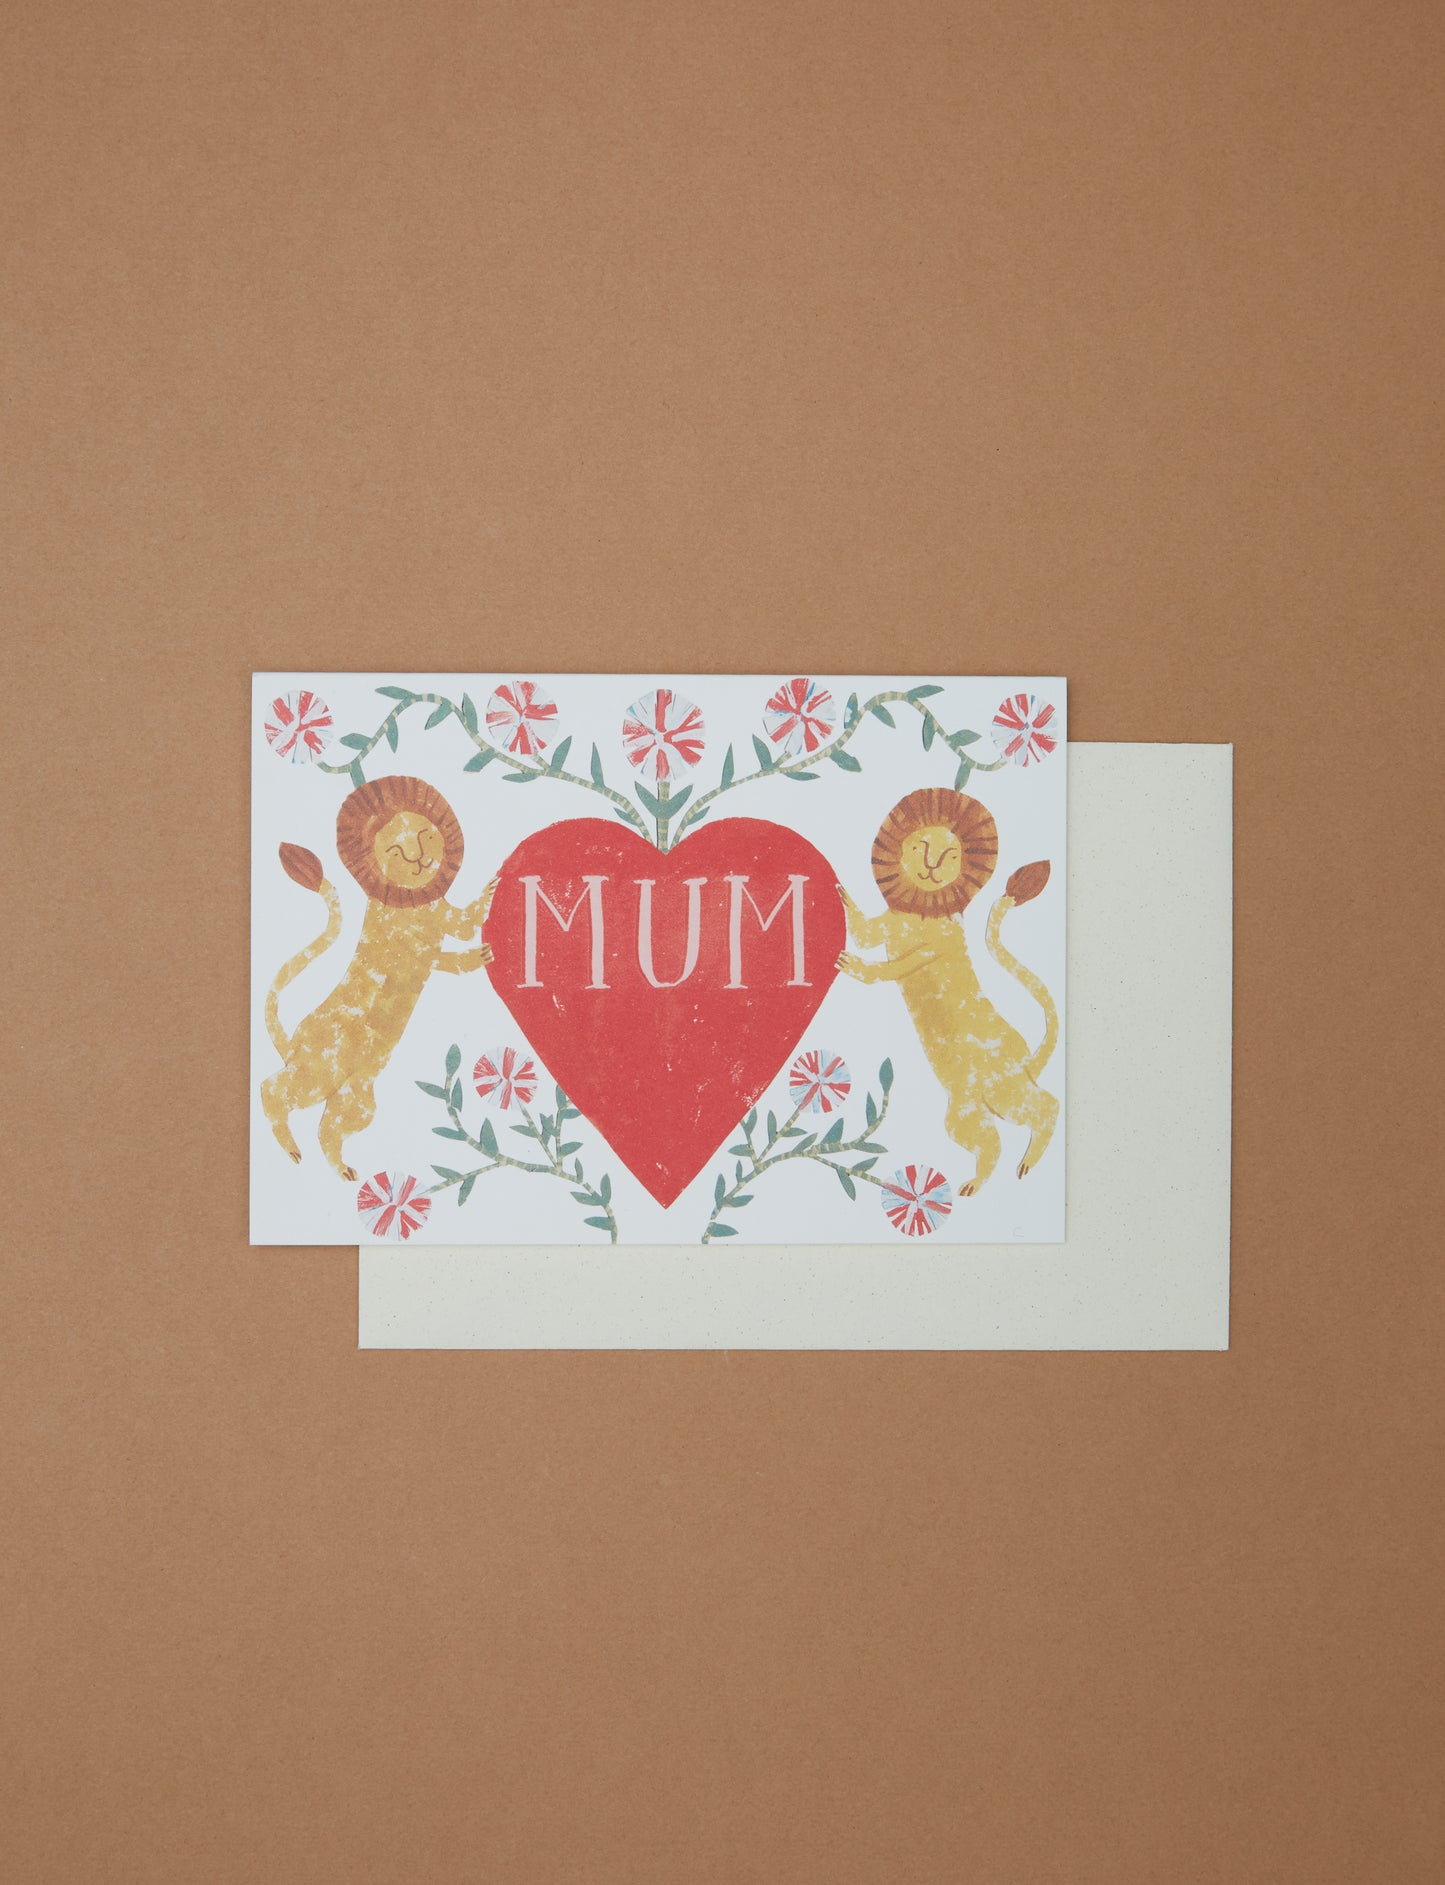 Mum Card by Hadley